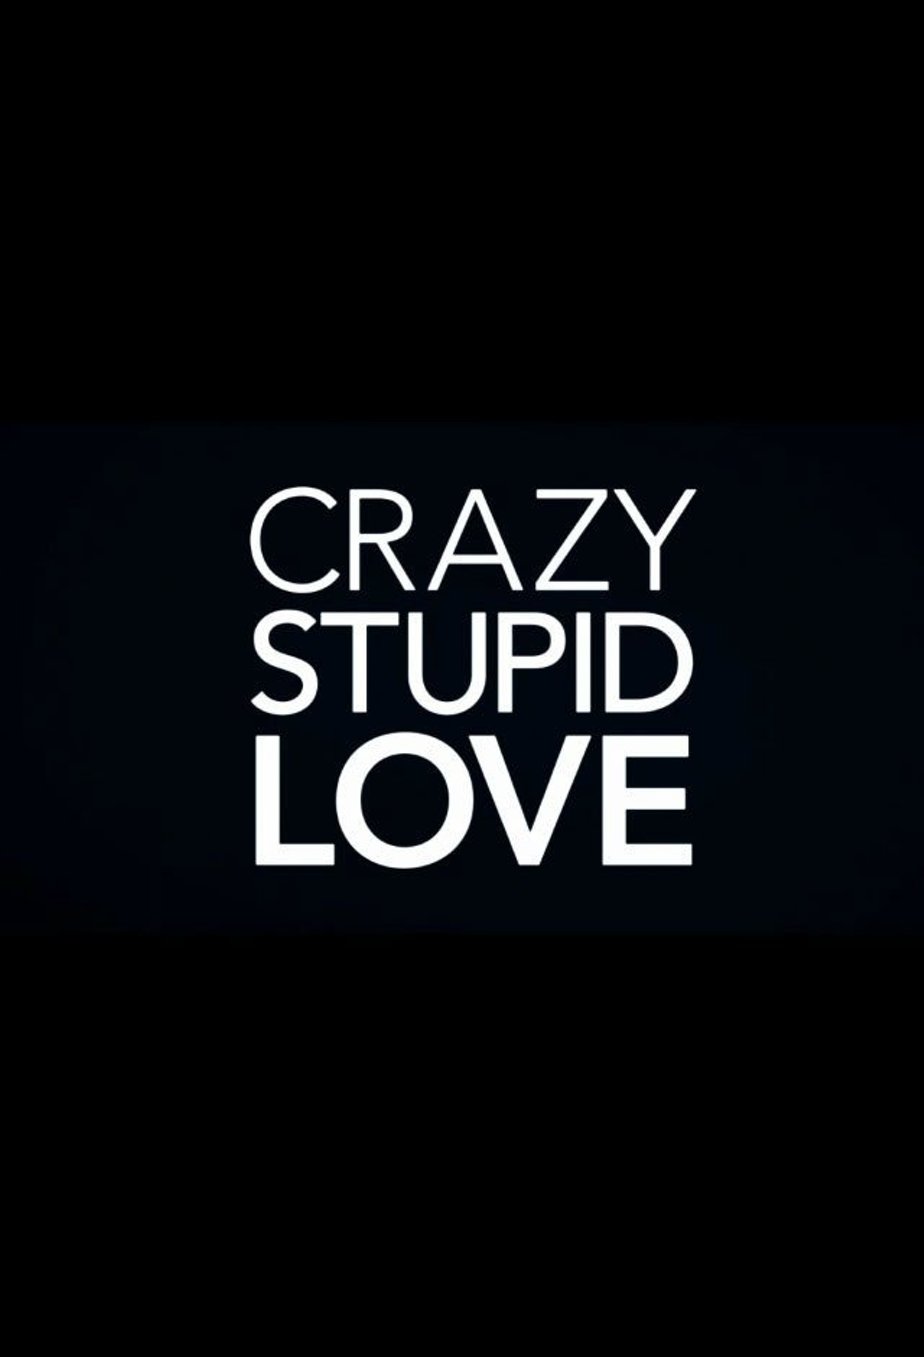 Крейзи лов. Crazy Love. Crazy stupid Love. Crazy stupid Love (2011). CRAZYFOOLS.